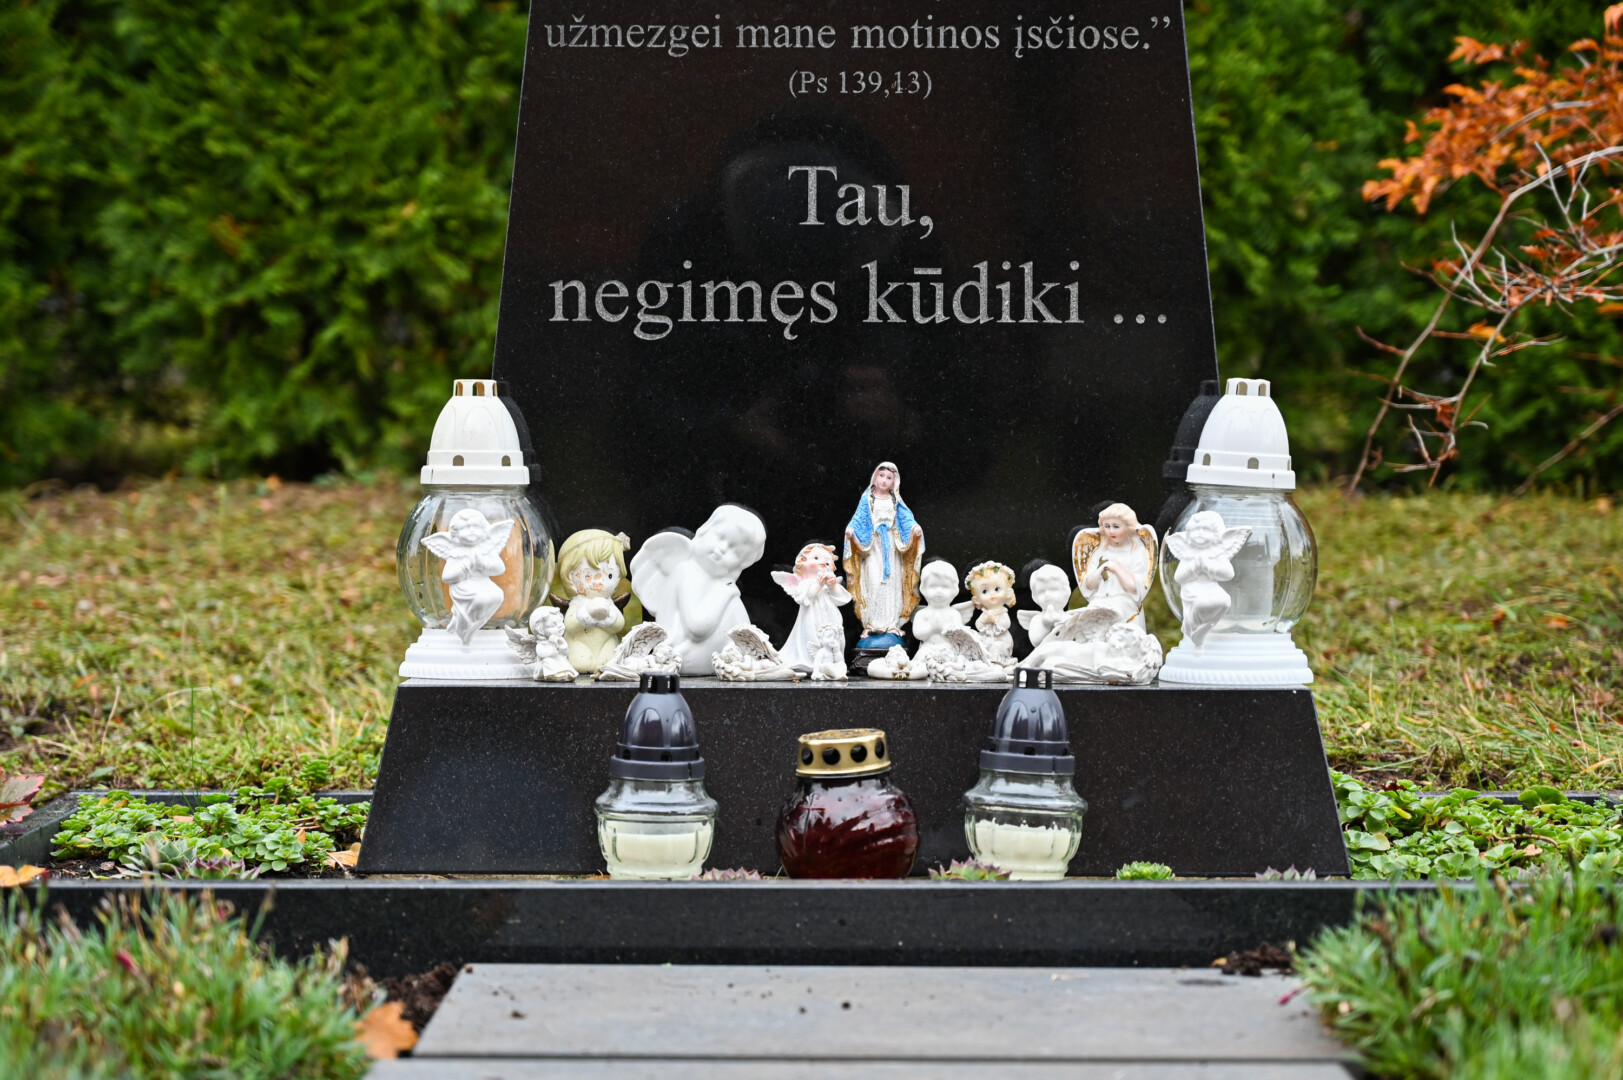 Dvasiniu Lietuvos centru įvardijamoje Šiluvoje kitą pirmadienį vyks neįprastos laidotuvės. Į bendrą kapavietę atguls negimusių kūdikių palaikai.